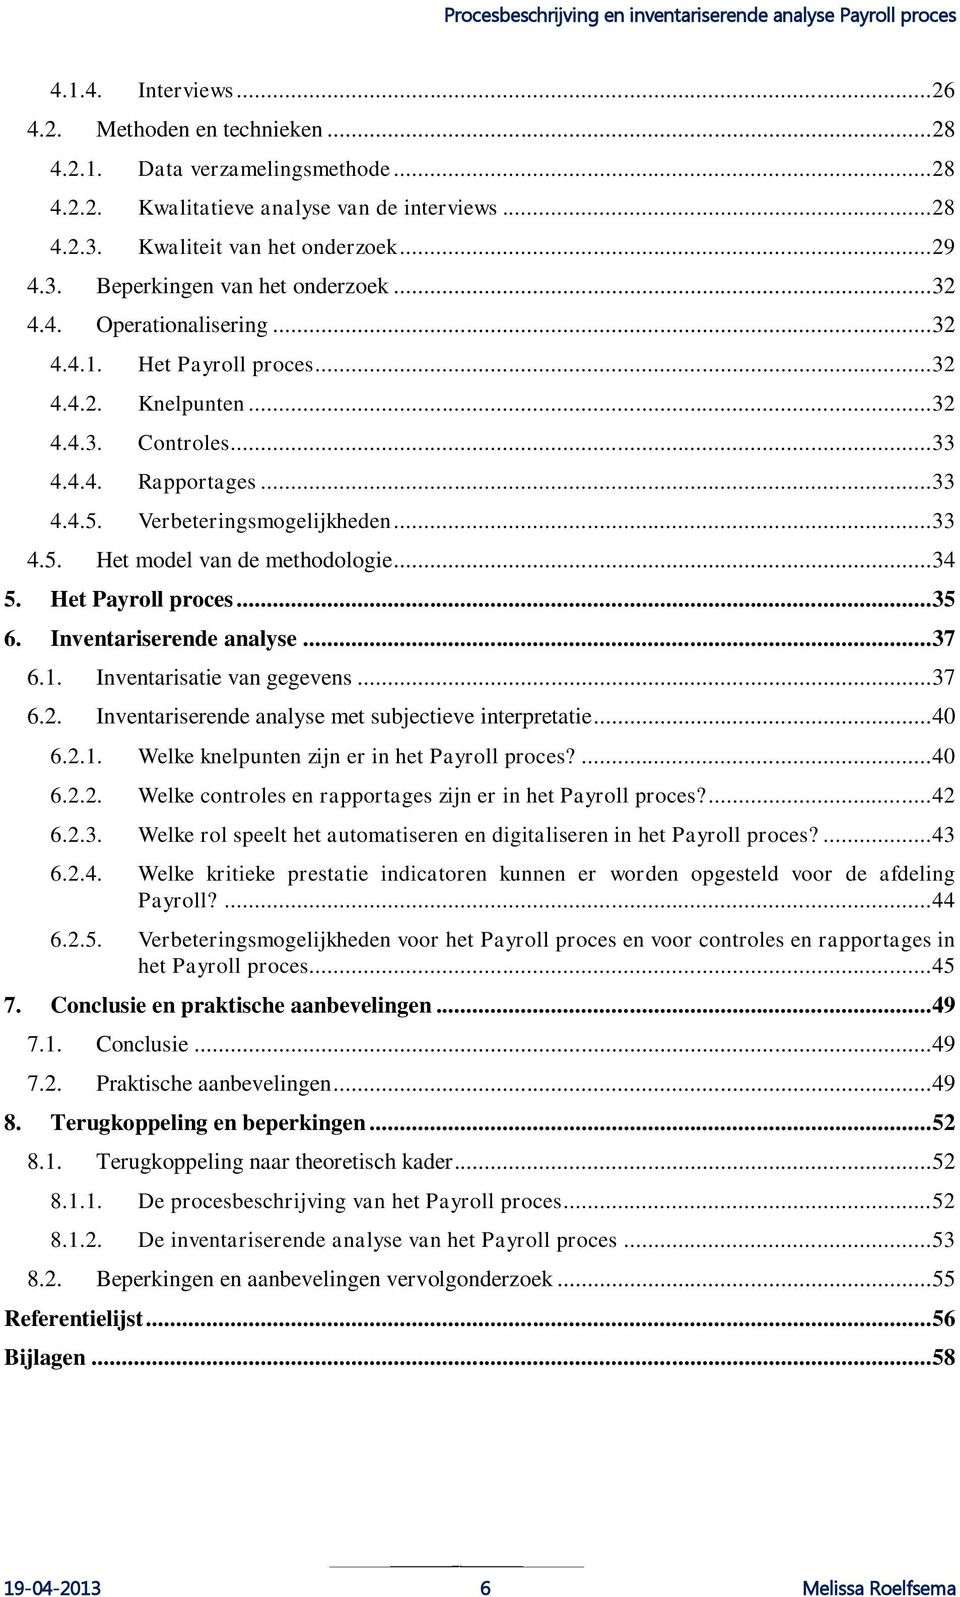 .. 34 5. Het Payroll proces... 35 6. Inventariserende analyse... 37 6.1. Inventarisatie van gegevens... 37 6.2. Inventariserende analyse met subjectieve interpretatie... 40 6.2.1. Welke knelpunten zijn er in het Payroll proces?